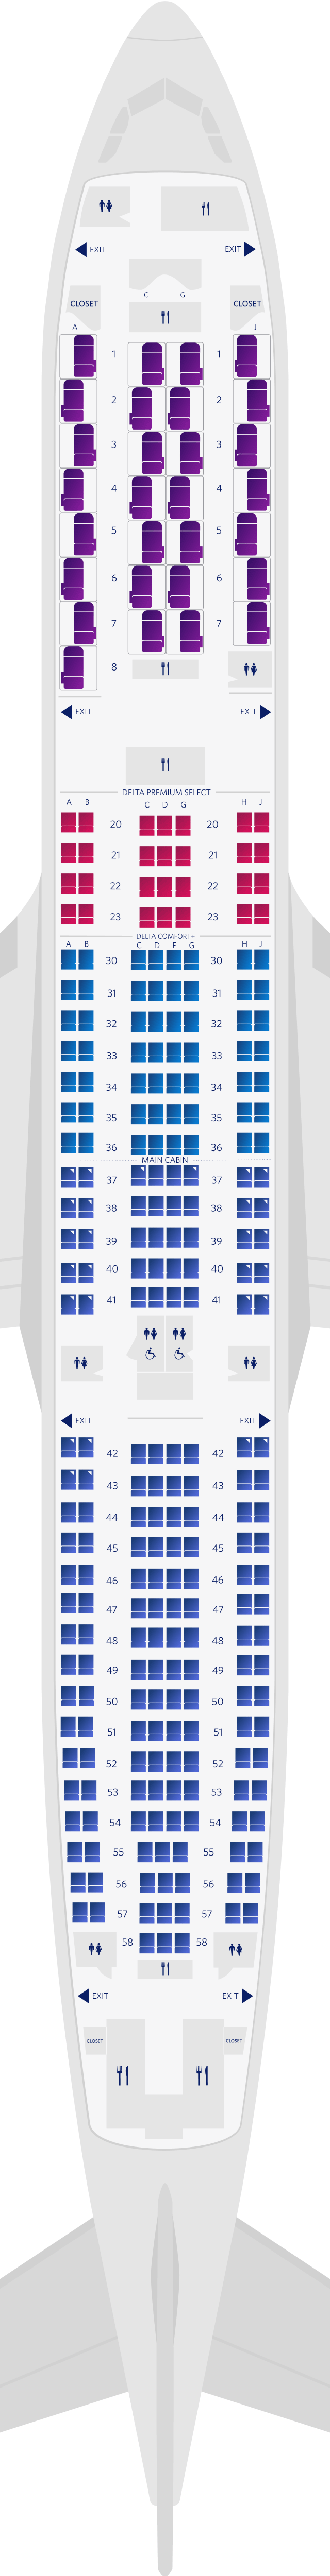 空中巴士A330-900neo座位圖